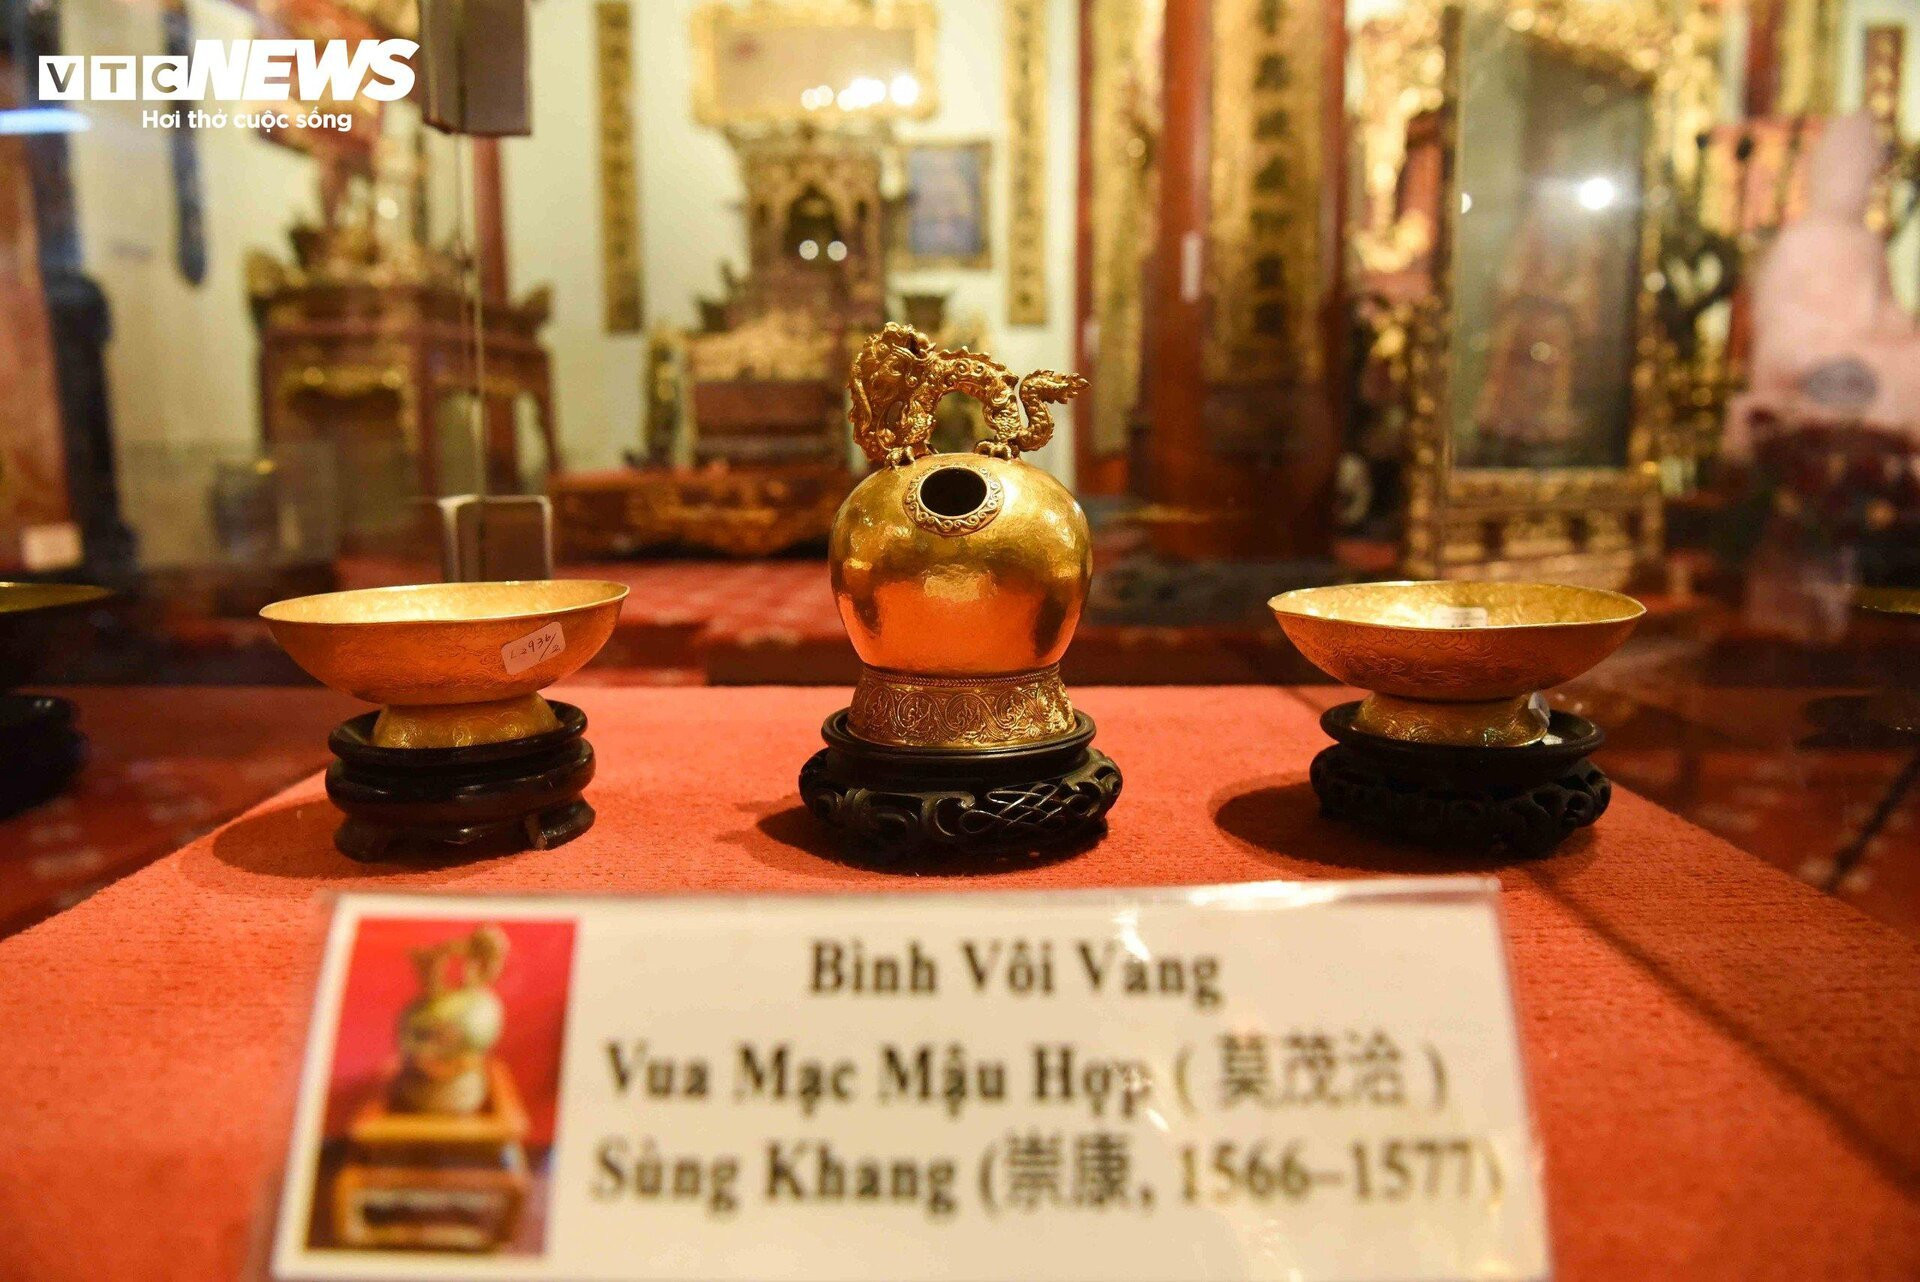 Cận cảnh ấn vàng 'Hoàng đế chi bảo' trưng bày tại bảo tàng tư nhân ở Bắc Ninh - 14